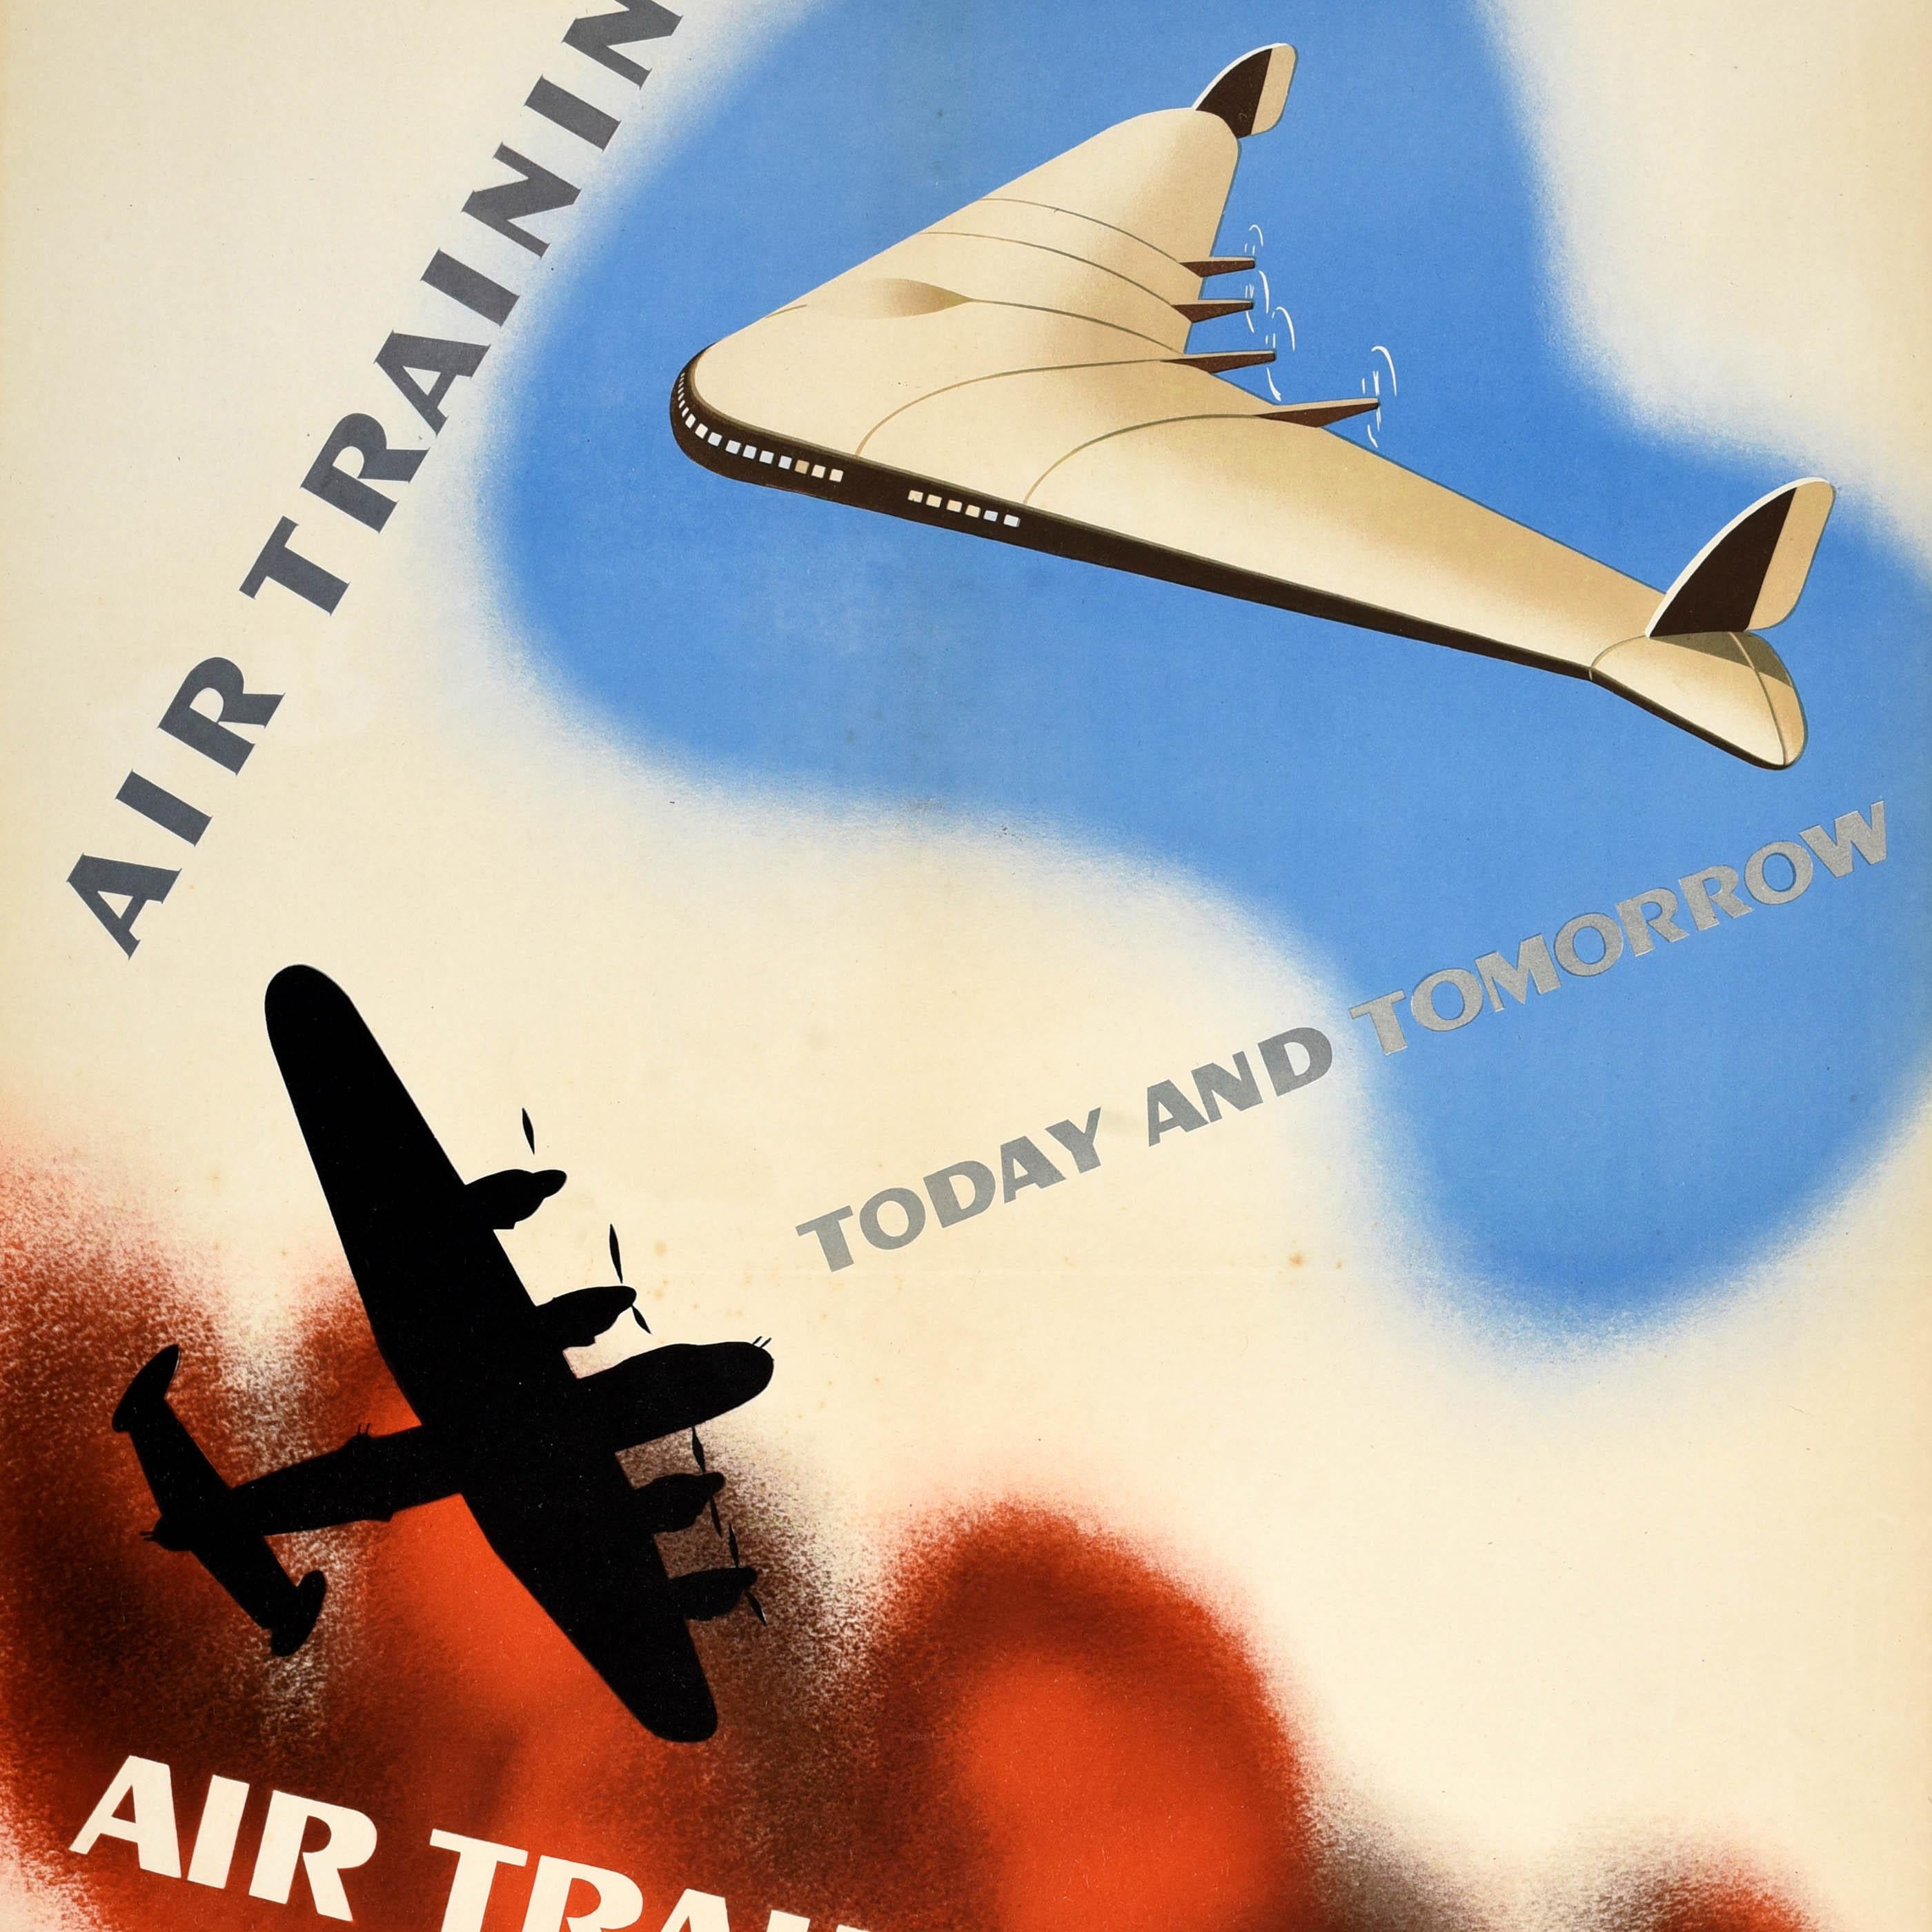 Original RAF Royal Air Force Rekrutierungsplakat für das Air Training Corps - Air Training Today and Tomorrow - mit einem Kunstwerk von Jonathan Foss (1910-1974), das die Silhouette eines Bombenflugzeugs aus dem Zweiten Weltkrieg auf rotem